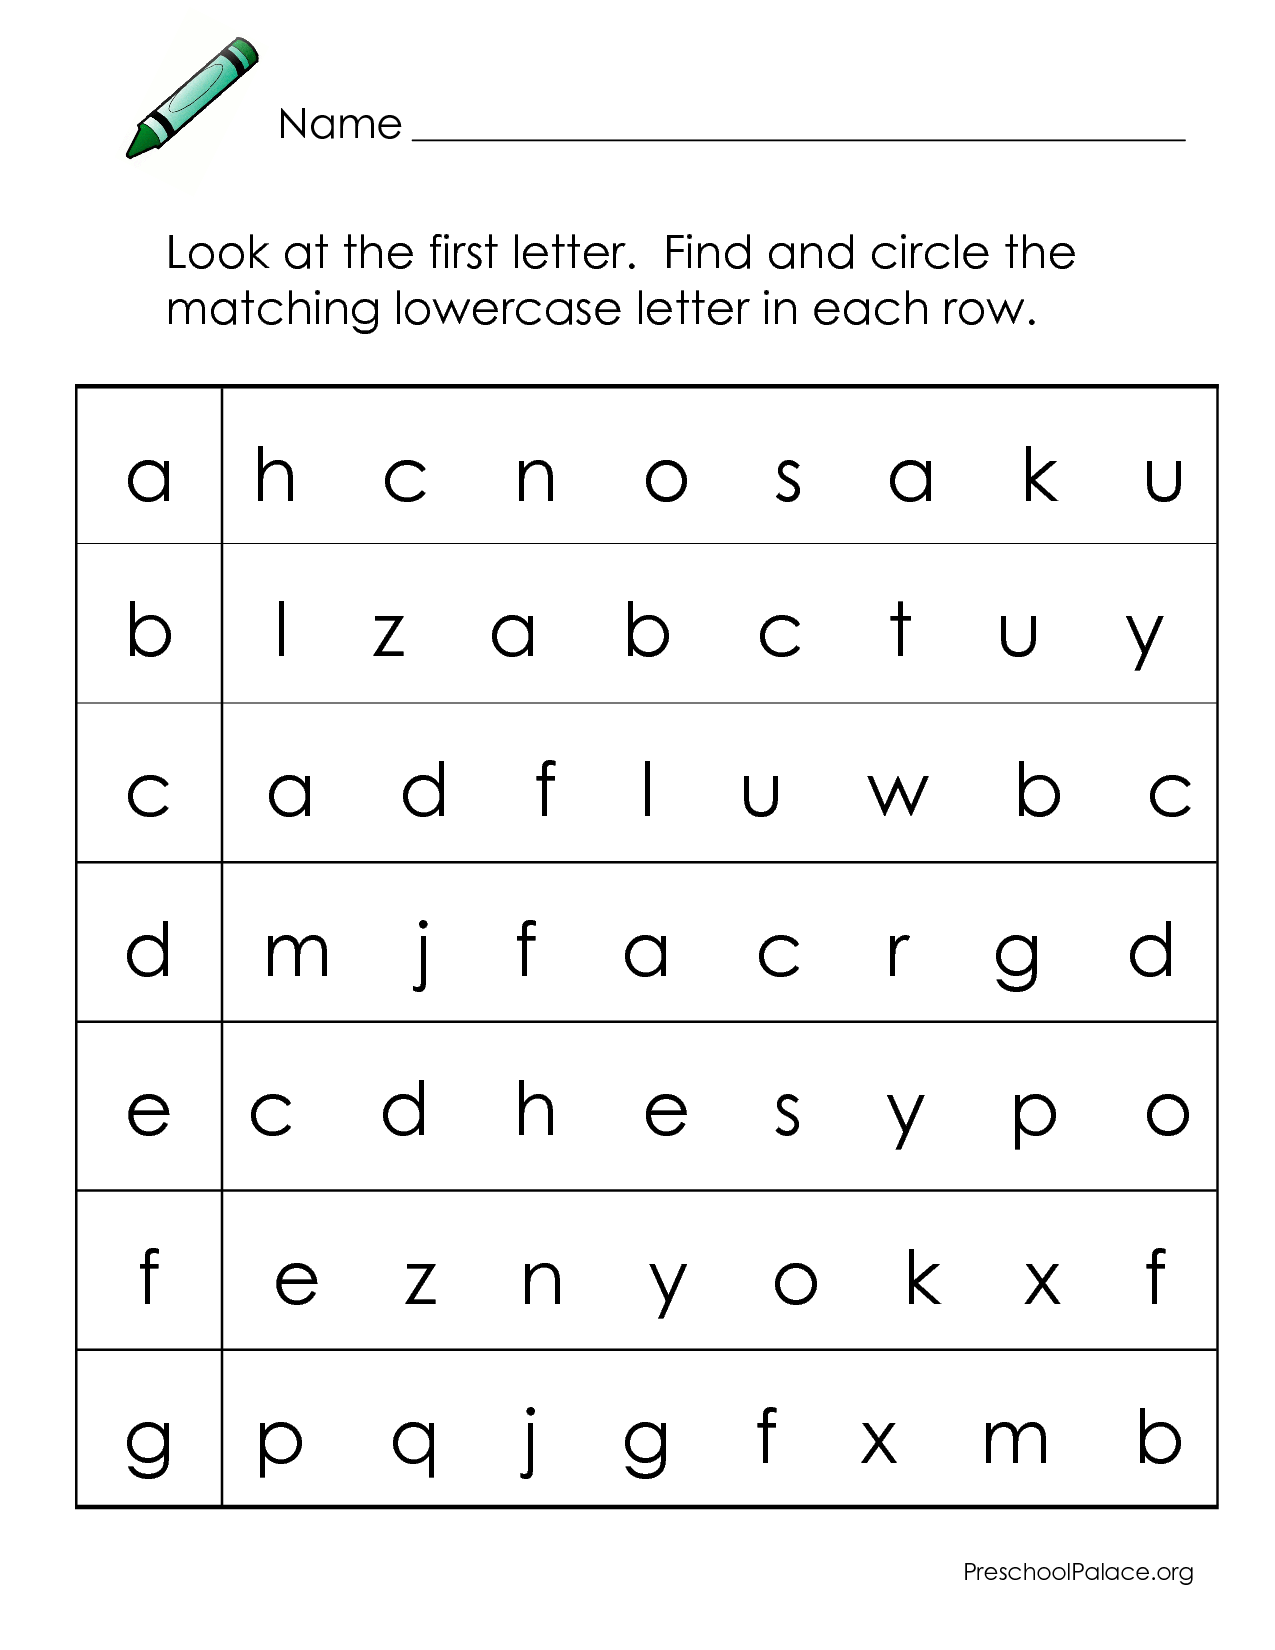 Abcs - Letter Matching A-G Lowercase | Letter Recognition inside Letter I Worksheets For Kindergarten